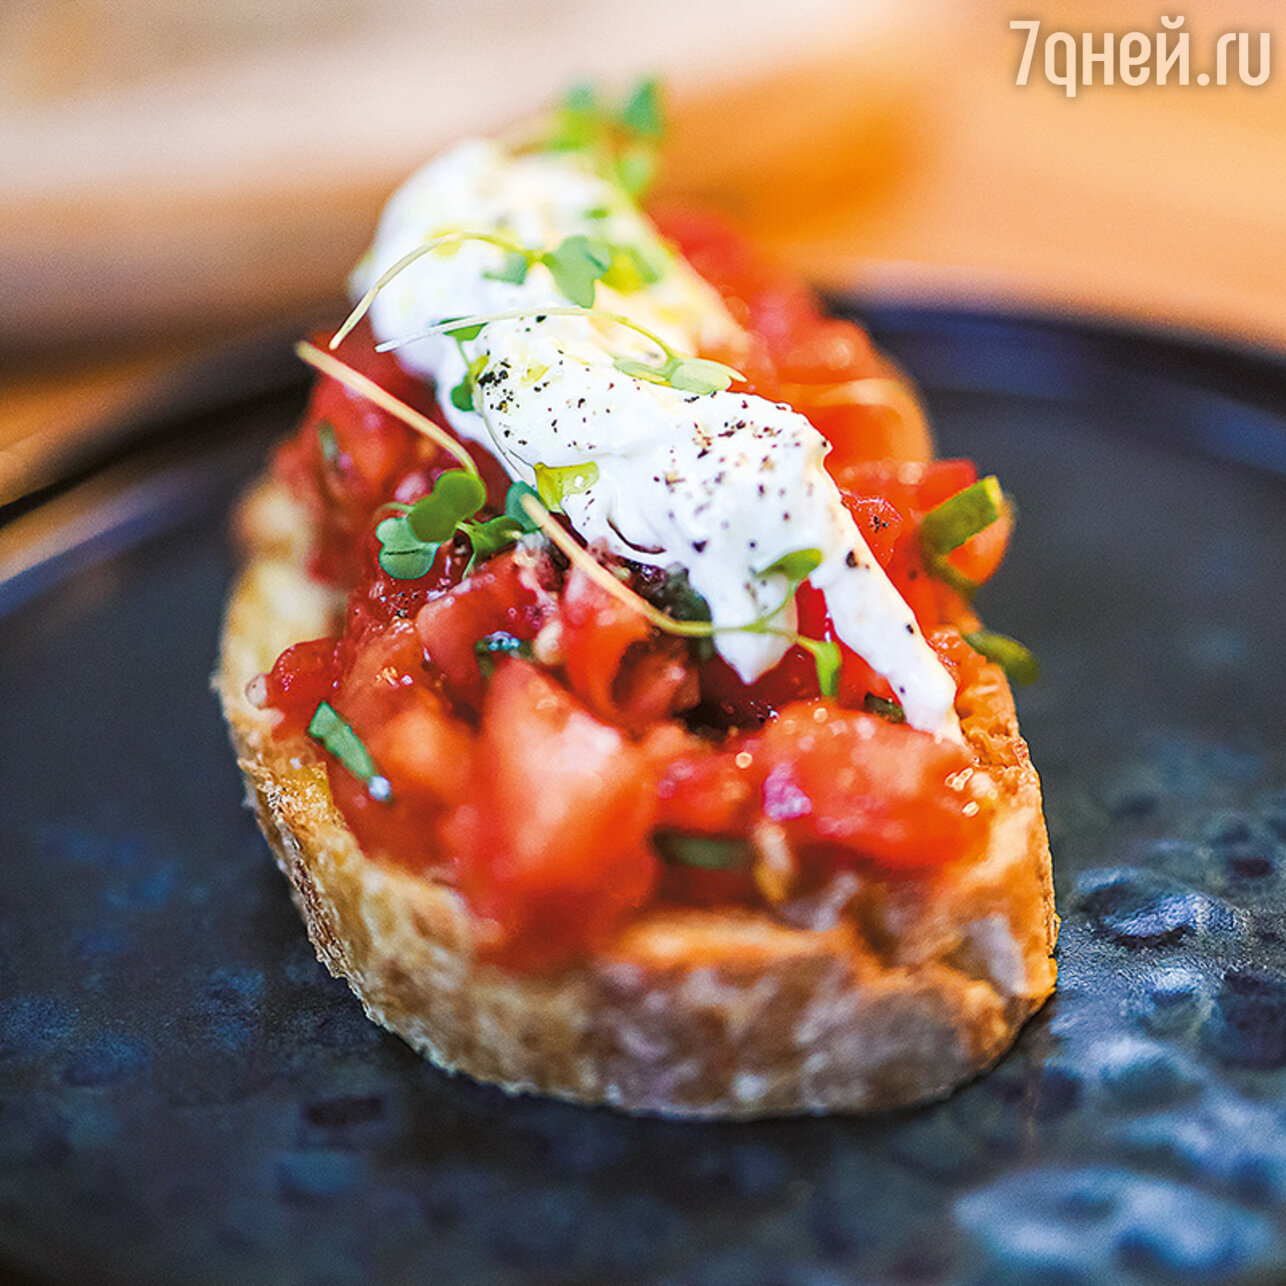 Брускетта с помидорами и страчателлой: пошаговый рецепт c фото